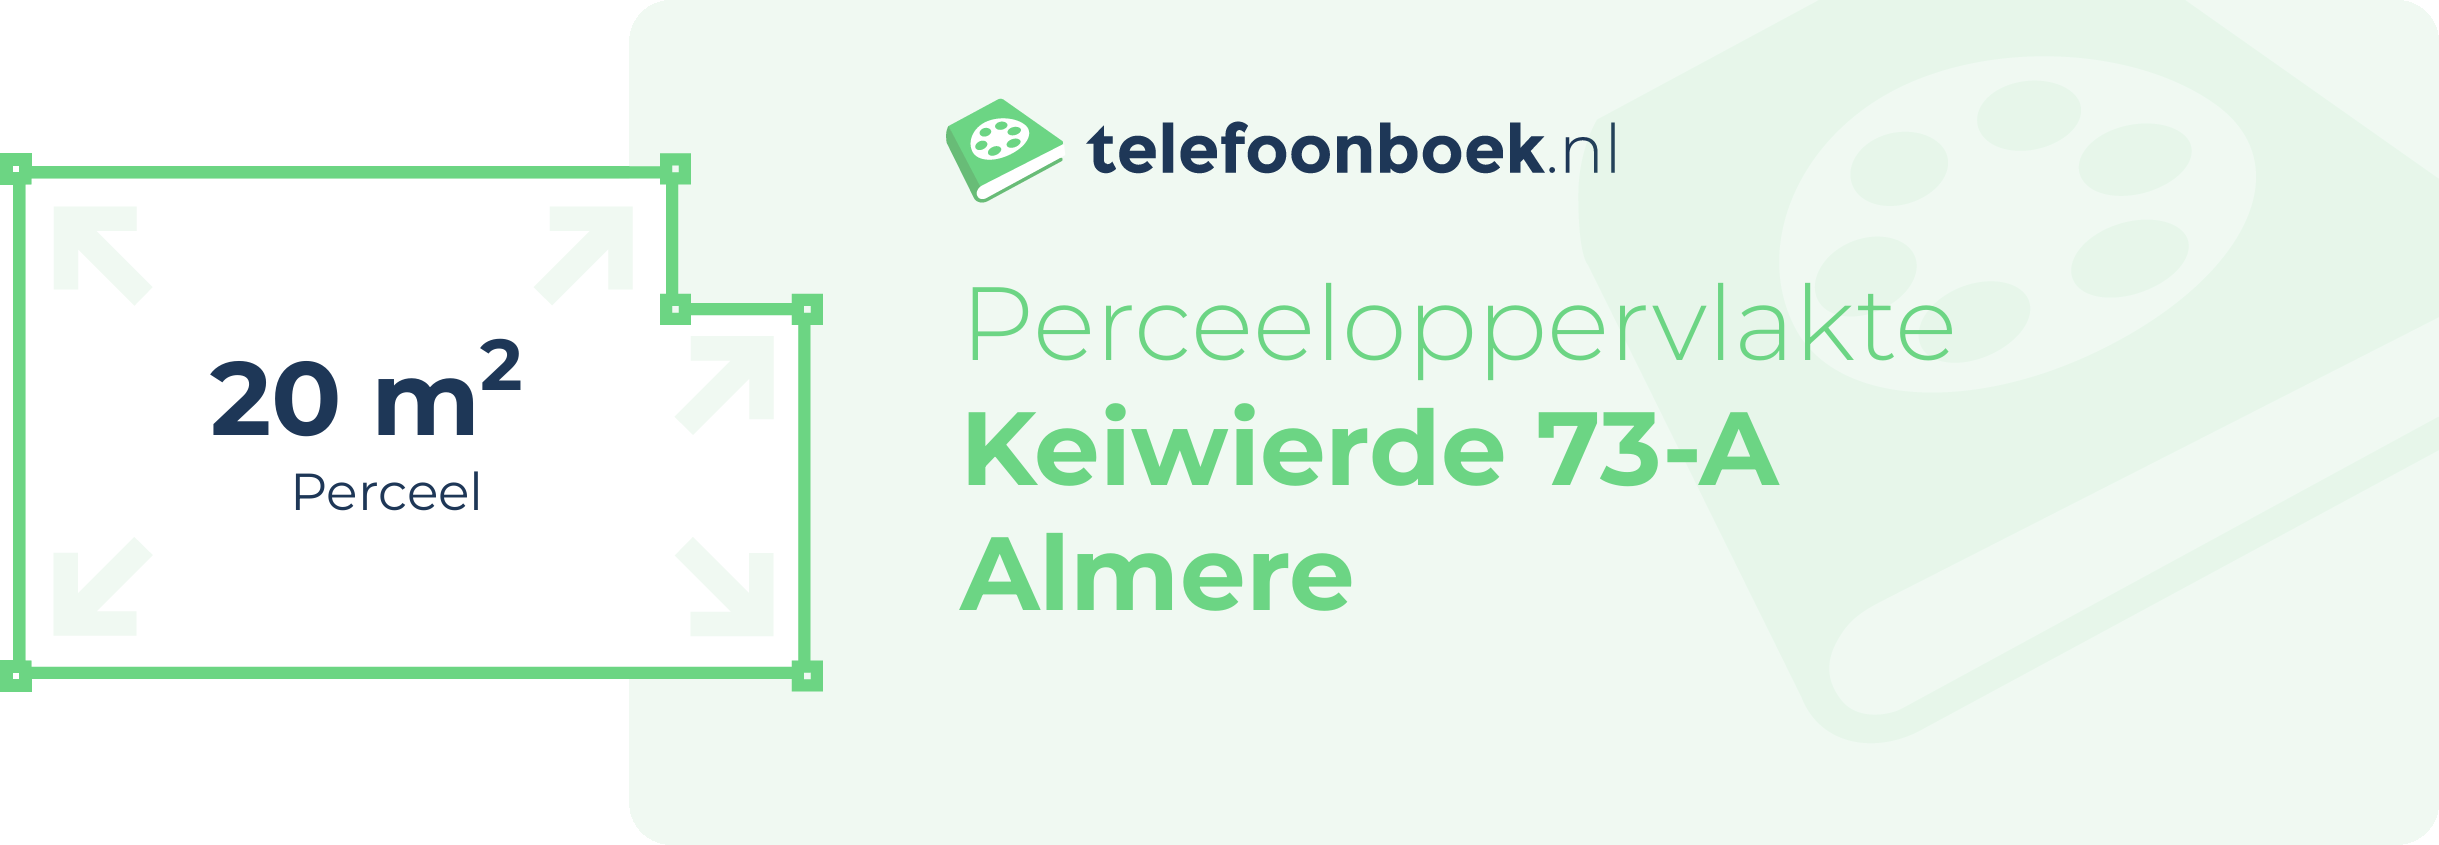 Perceeloppervlakte Keiwierde 73-A Almere